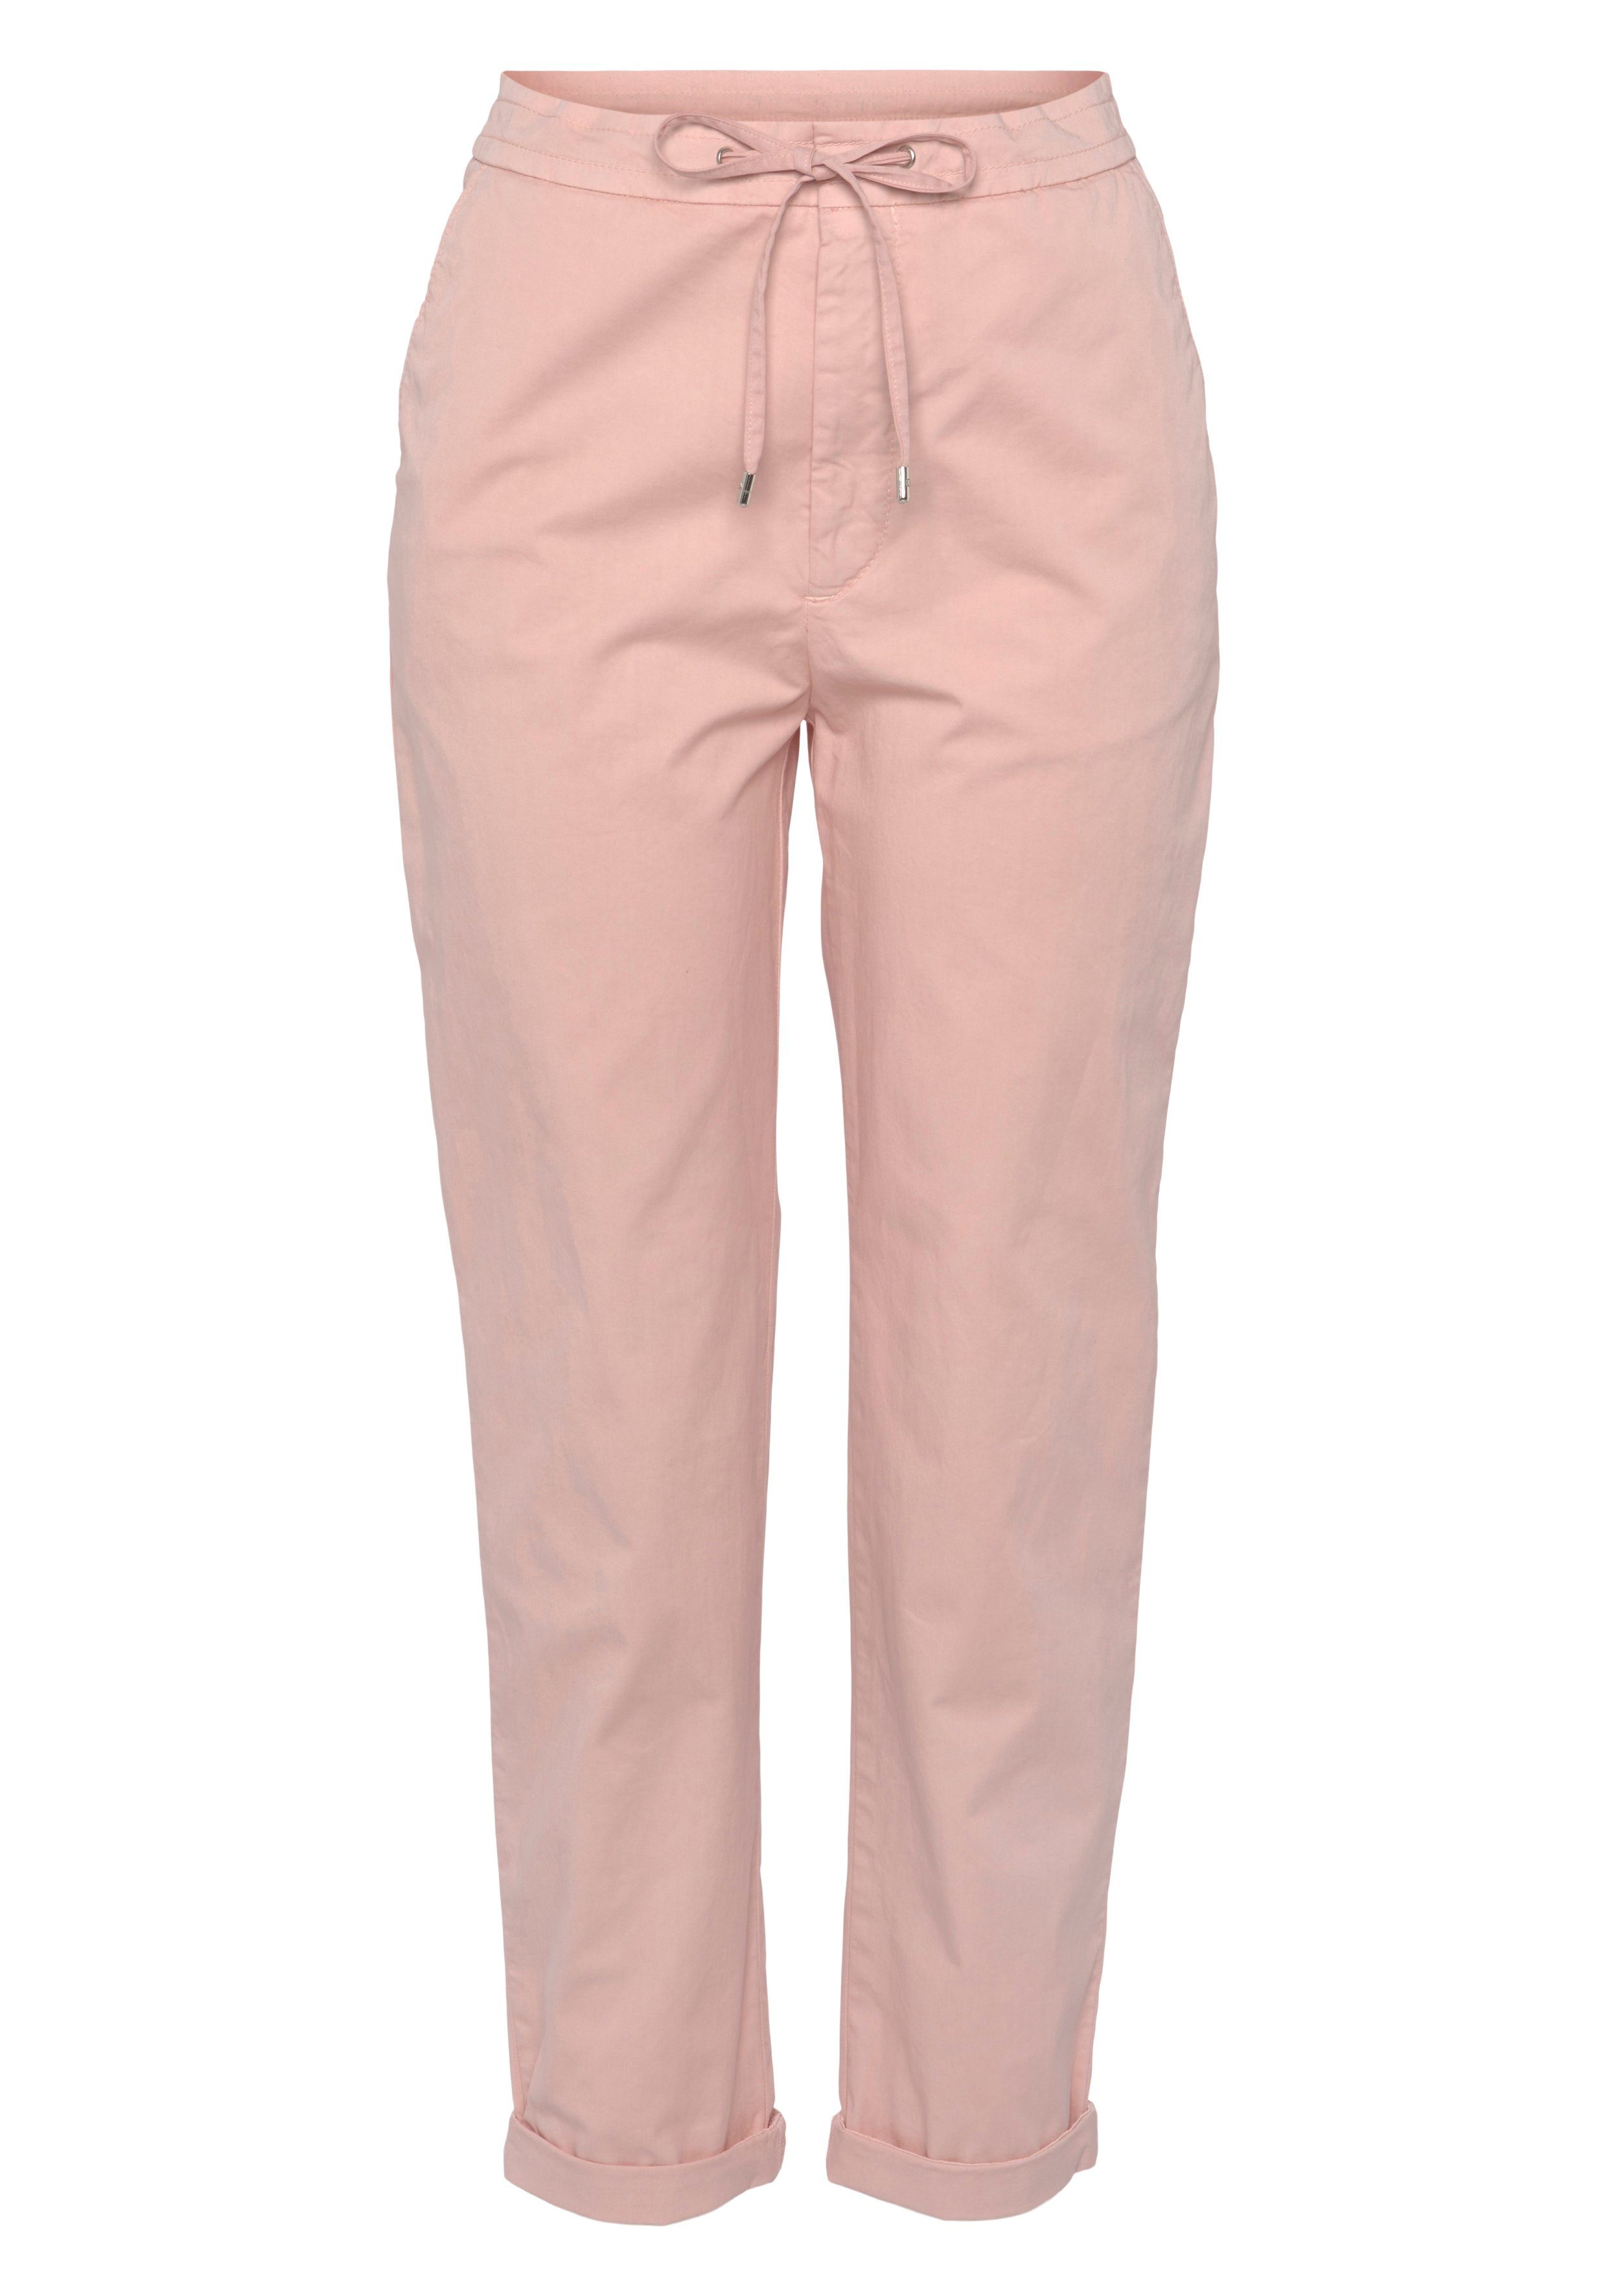 Bein, HUGO BOSS Chinohose geradem pink mit Jerseyhose ähnlich mit Leinenhose Strech ORANGE Sommer